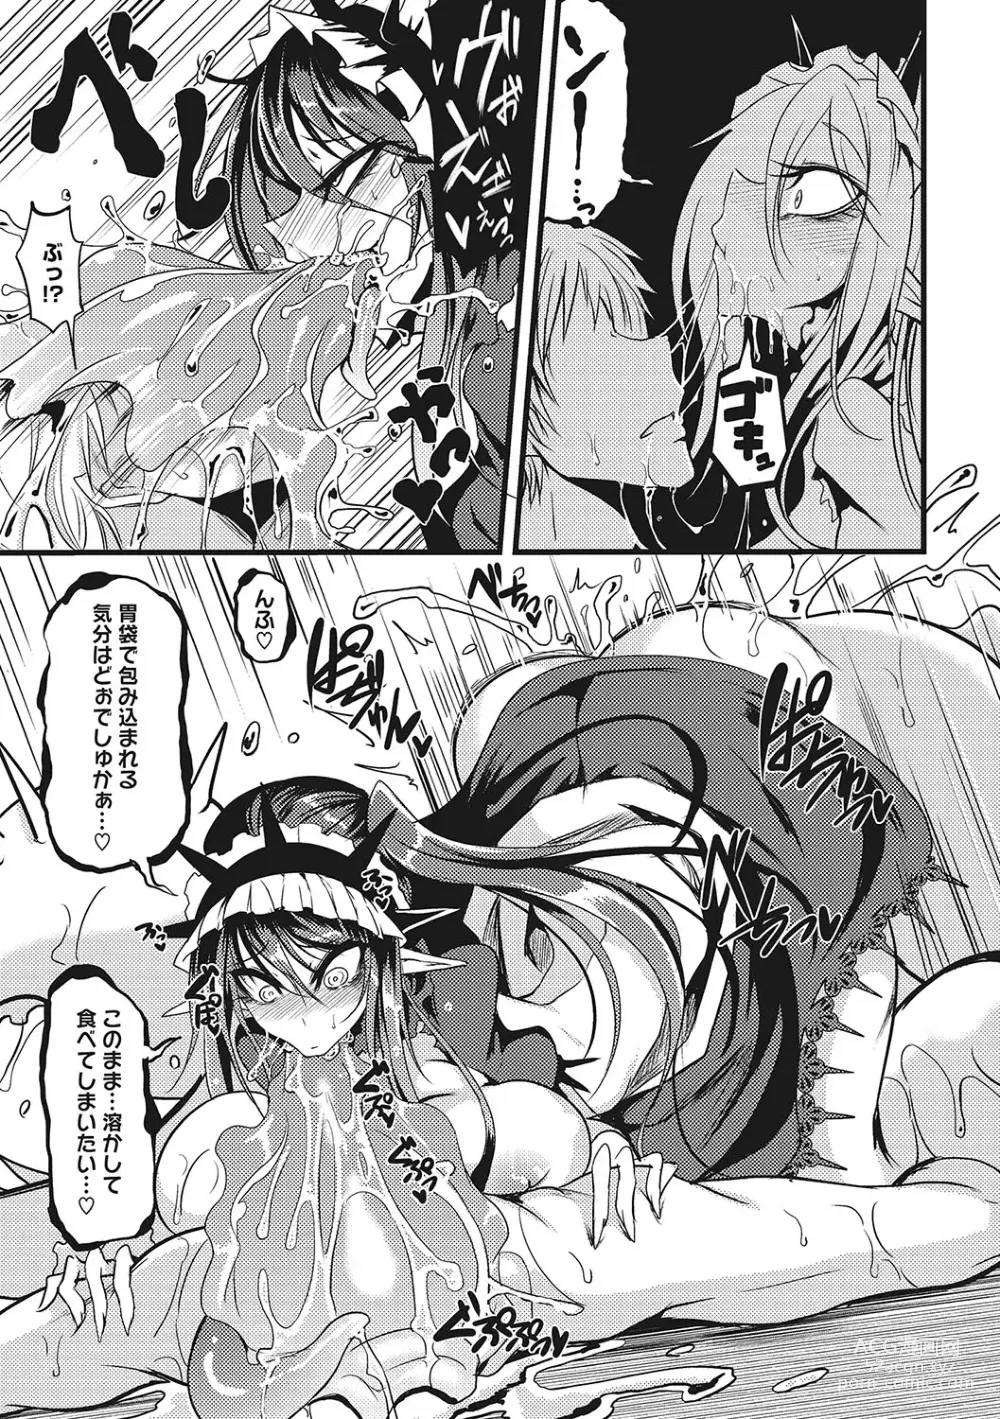 Page 286 of manga Sanpai Shoujo